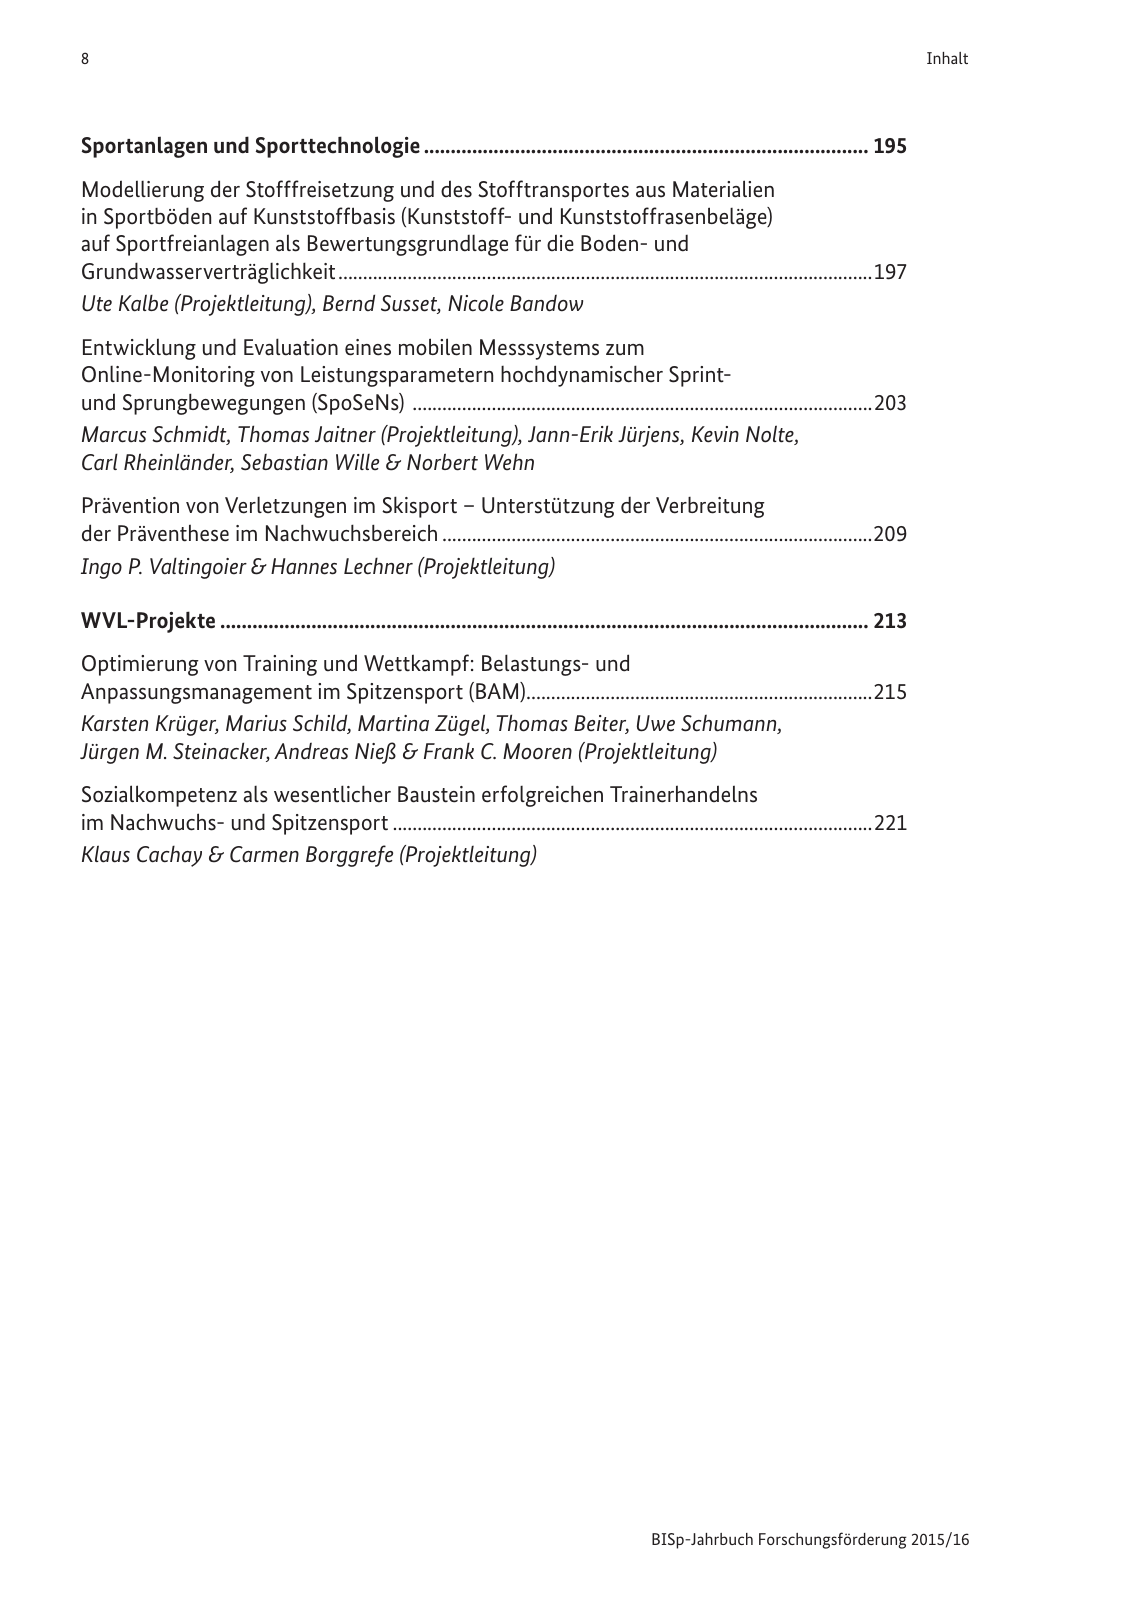 Vorschau BISp-Jahrbuch Forschungsförderung 2015/16 Seite 10